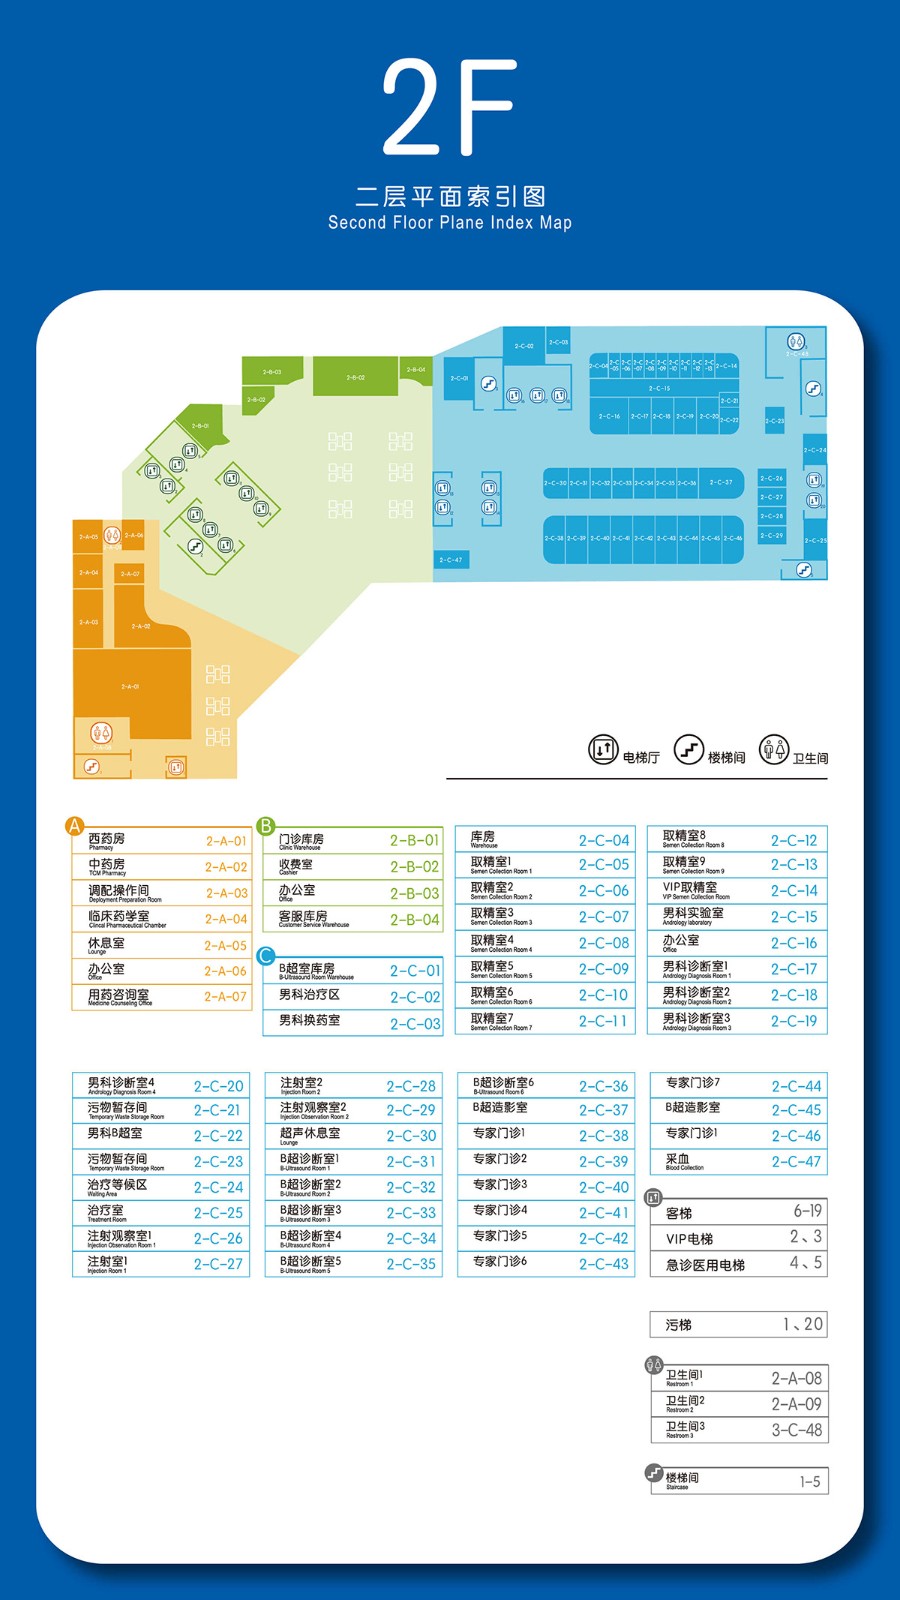 成都西囡妇科医院 2F 二层平台索引图